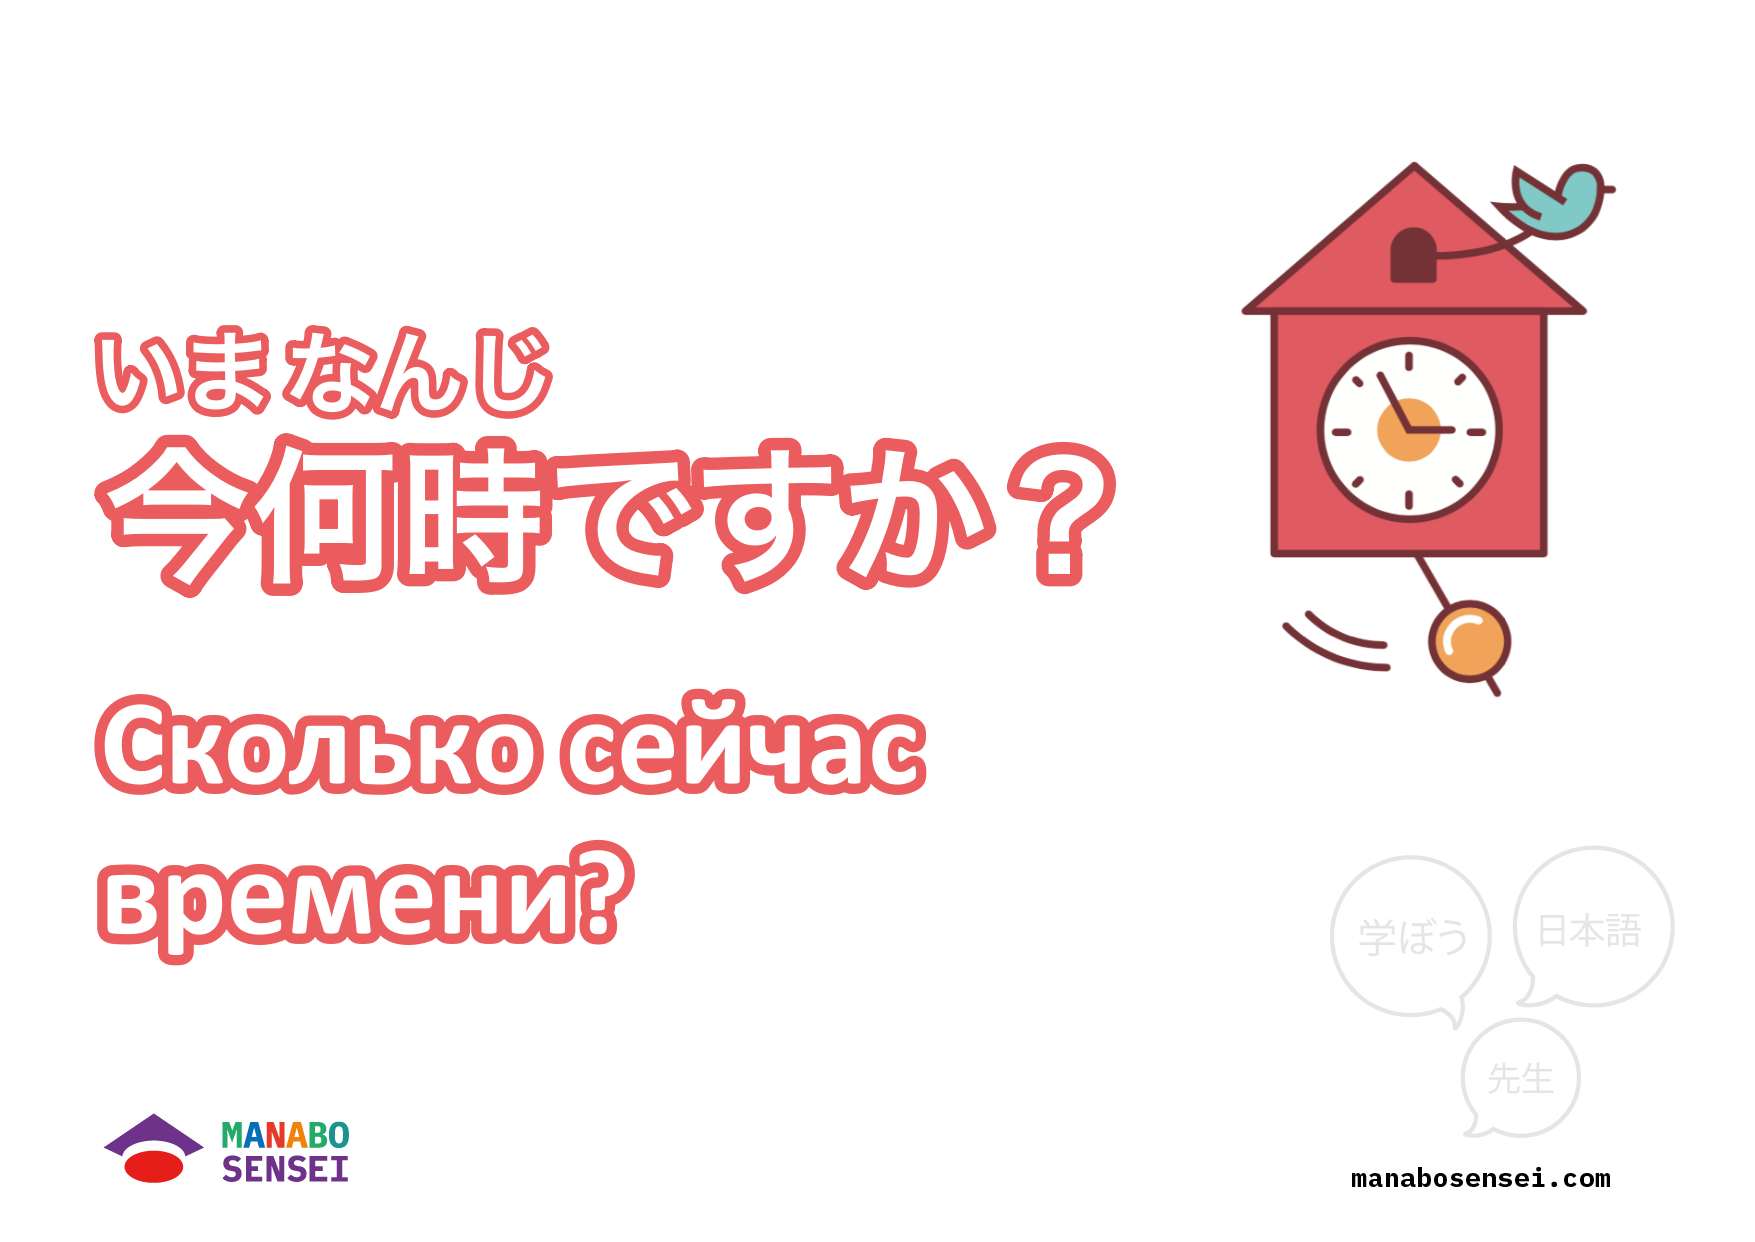 День на японском языке. Часы на японском языке. Часы по японски. Минуты в японском языке. Времена в японском языке.